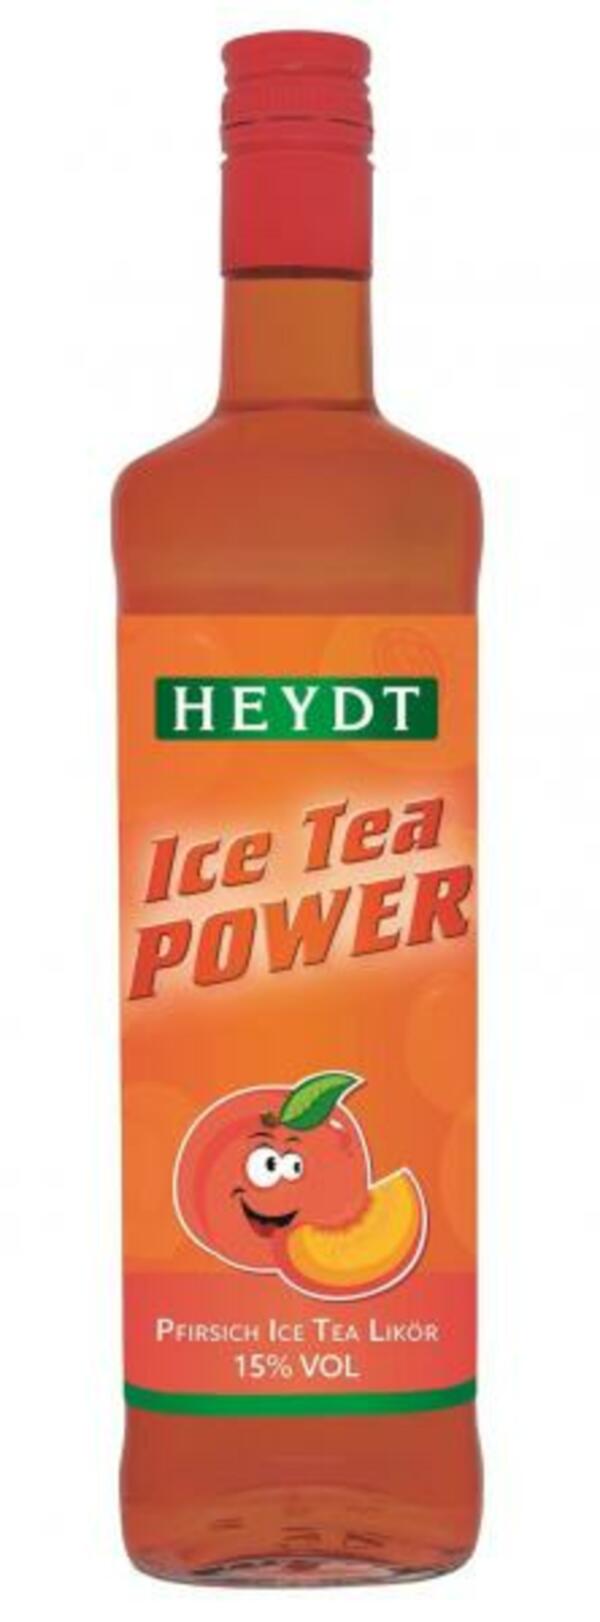 Bild 1 von Heydt Ice Tea Power Likör